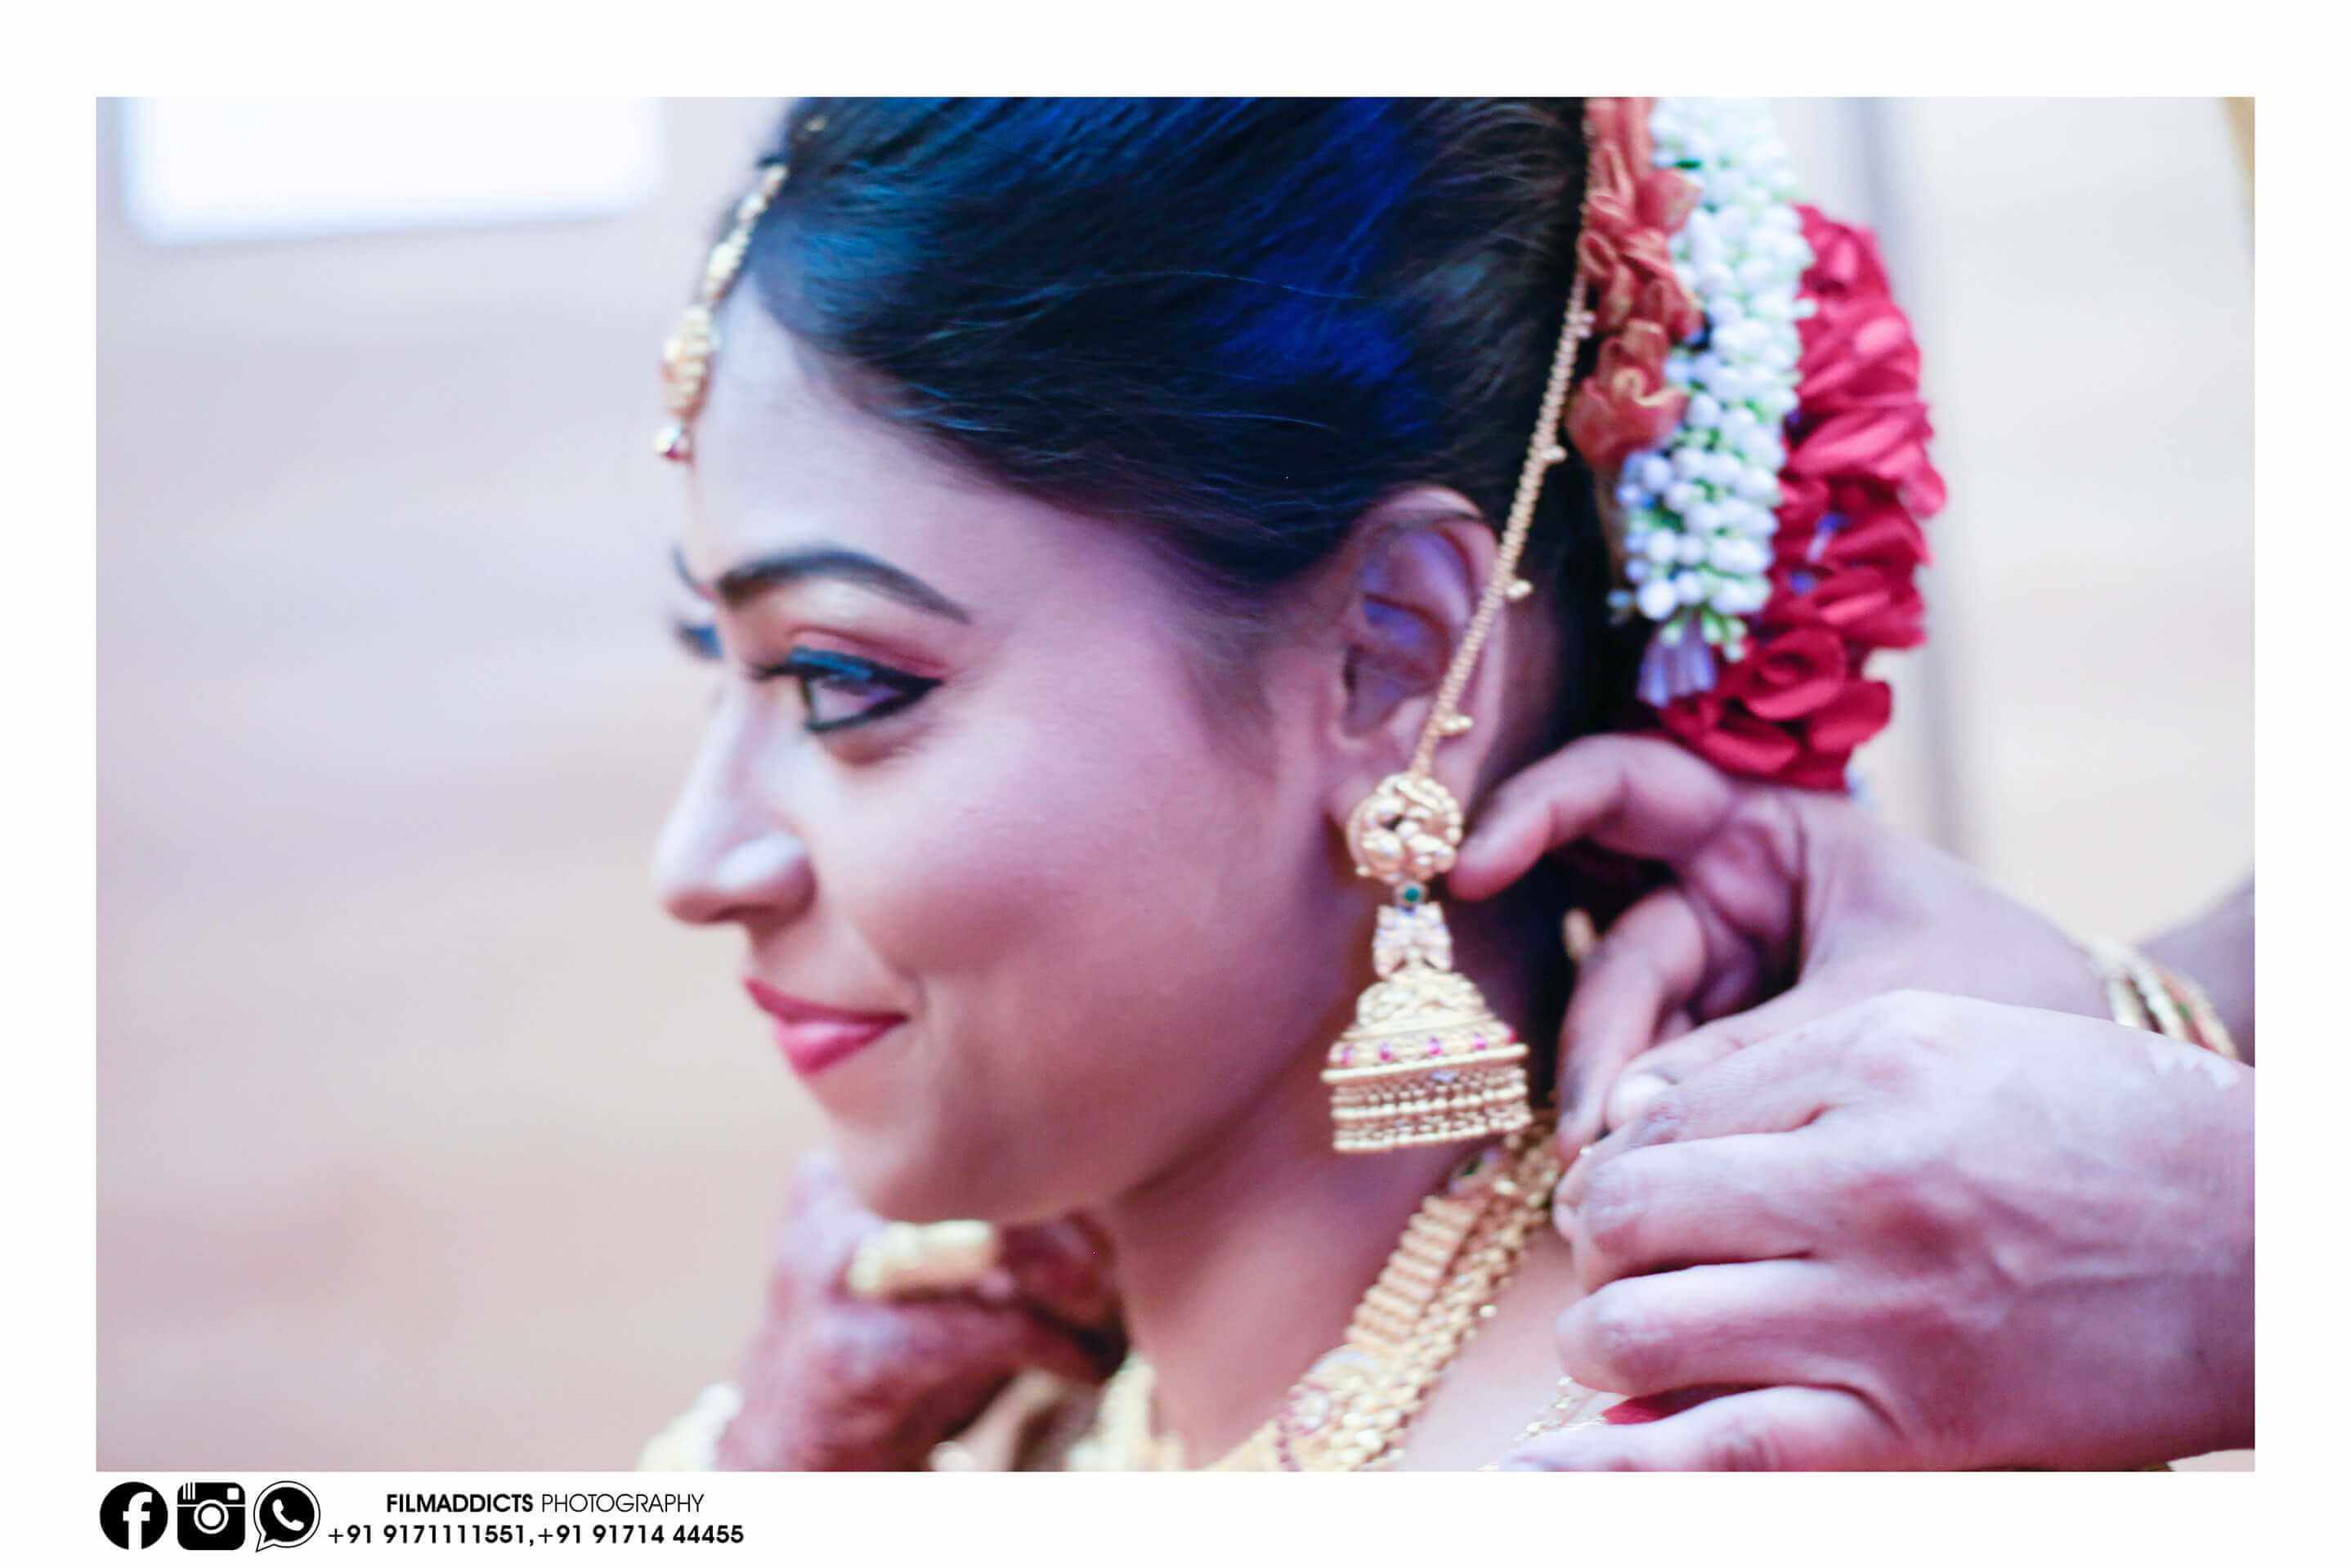 Best-Candid-Photo-in-madurai, best-candid-Photo-in-madurai,best-candid-Photo-in-madurai,Best Candid Wedding Photographer in Madurai,Best Candid Wedding Photographer in Madurai,creative-wedding-Photo-in-madurai,creative-candid-Photo-in-madurai